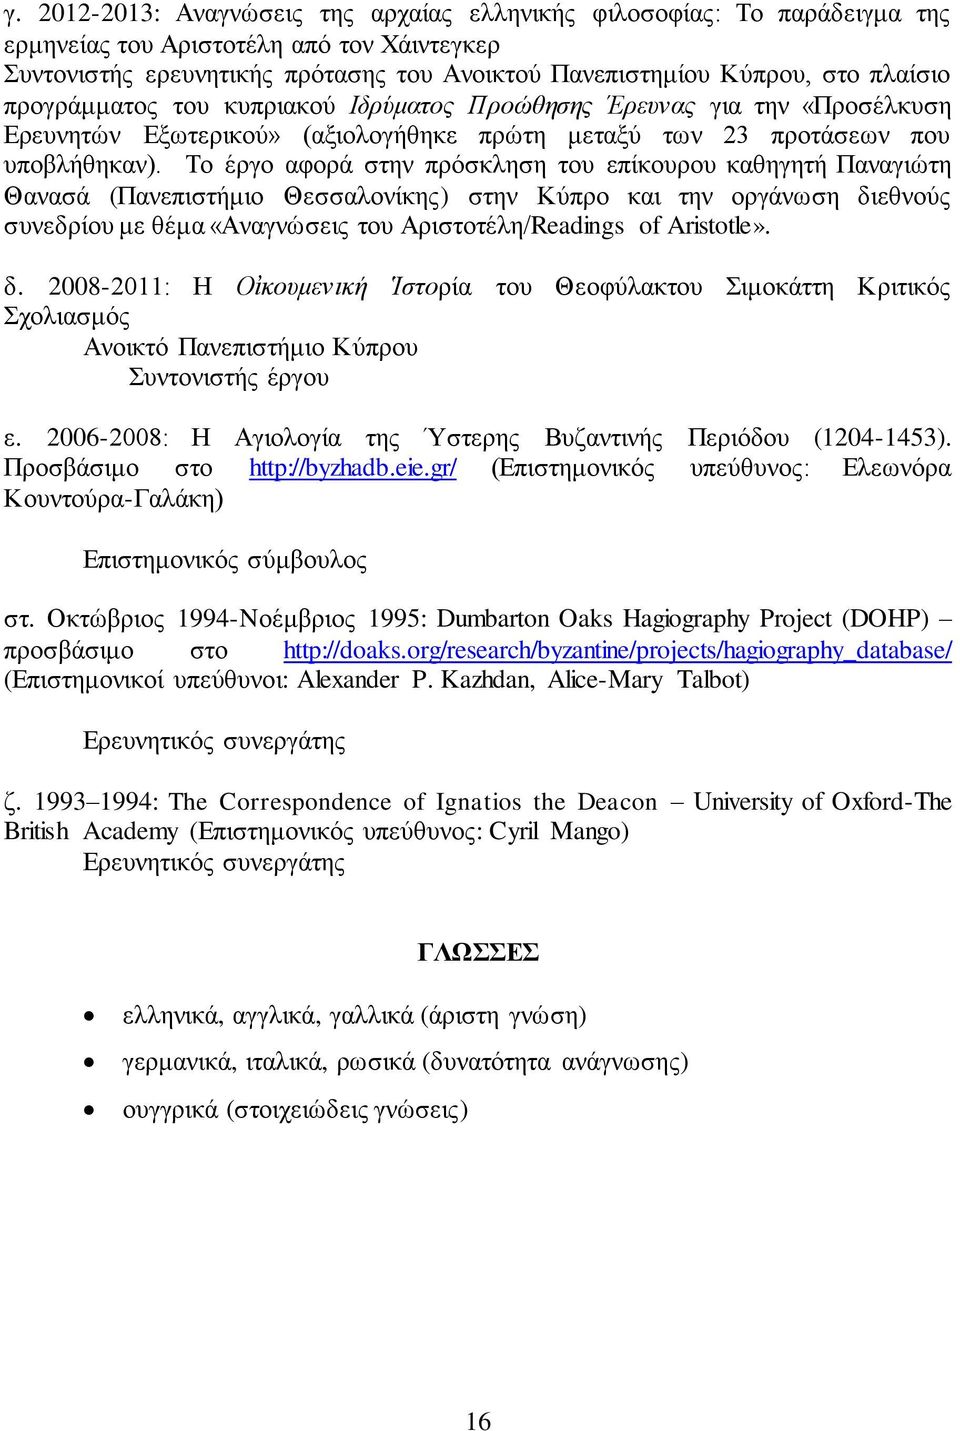 Το έργο αφορά στην πρόσκληση του επίκουρου καθηγητή Παναγιώτη Θανασά (Πανεπιστήμιο Θεσσαλονίκης) στην Κύπρο και την οργάνωση διεθνούς συνεδρίου με θέμα «Αναγνώσεις του Αριστοτέλη/Readings of